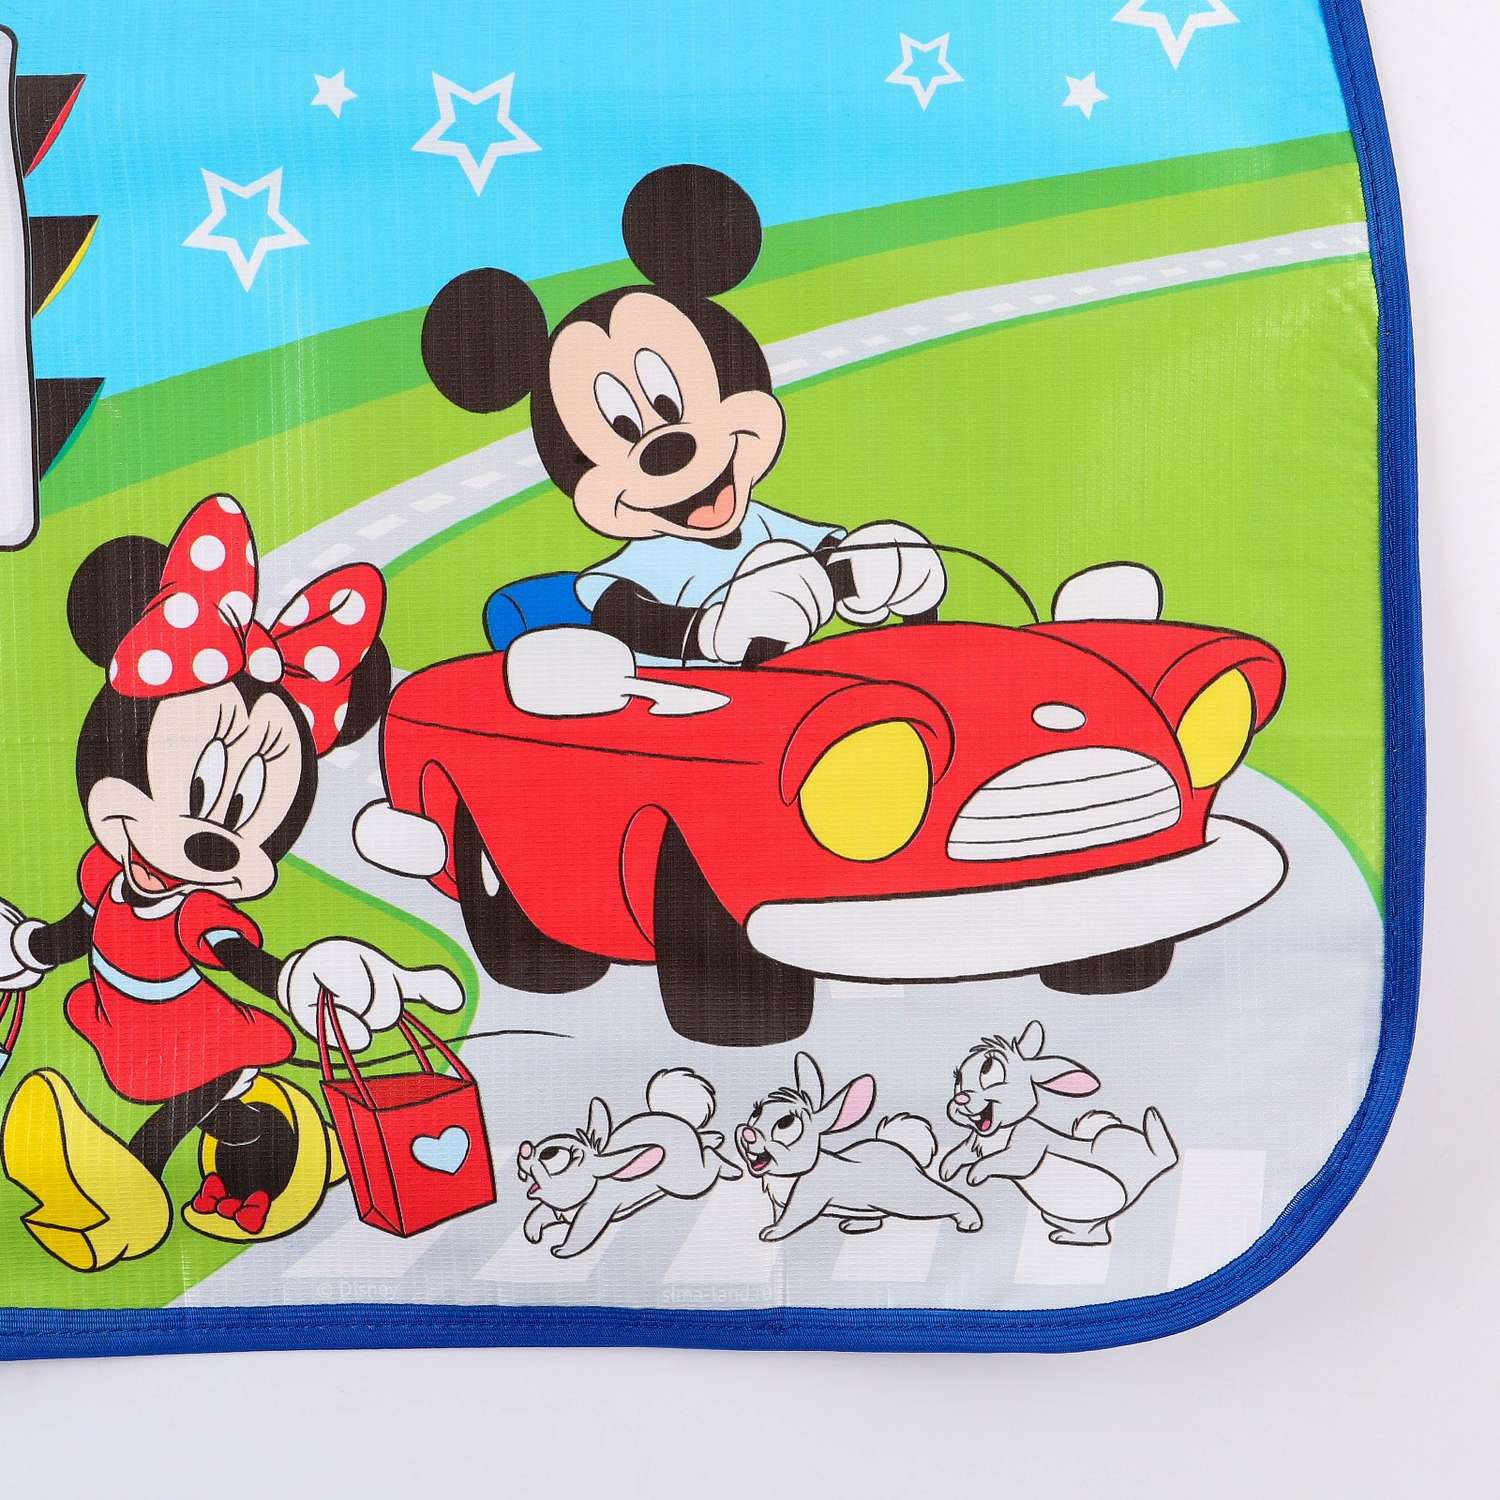 Незапинайка Disney на автомобильное кресло «ПДД» Микки Маус - фото 2